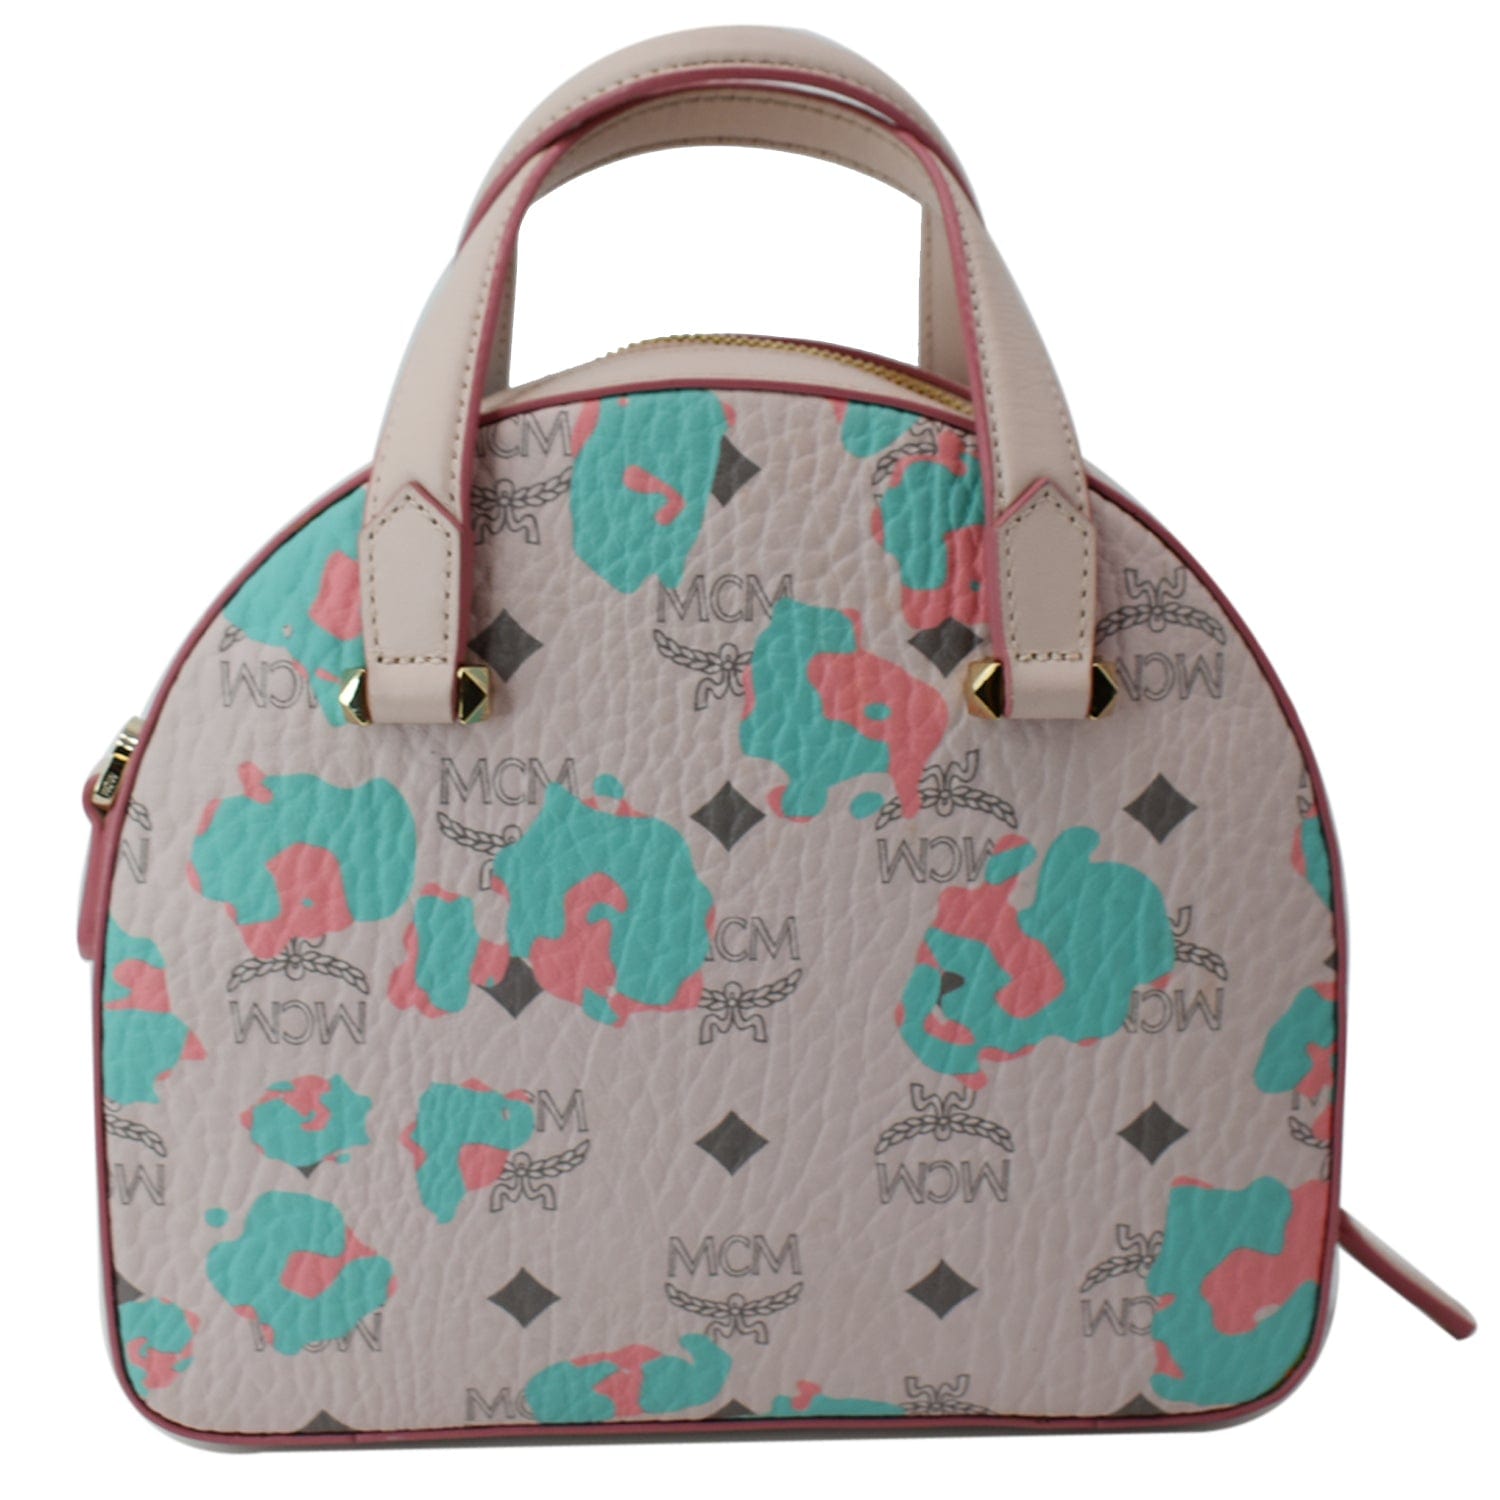 Date Bag Fashion Influencer Hot Pink Handbag Tiny Bag 